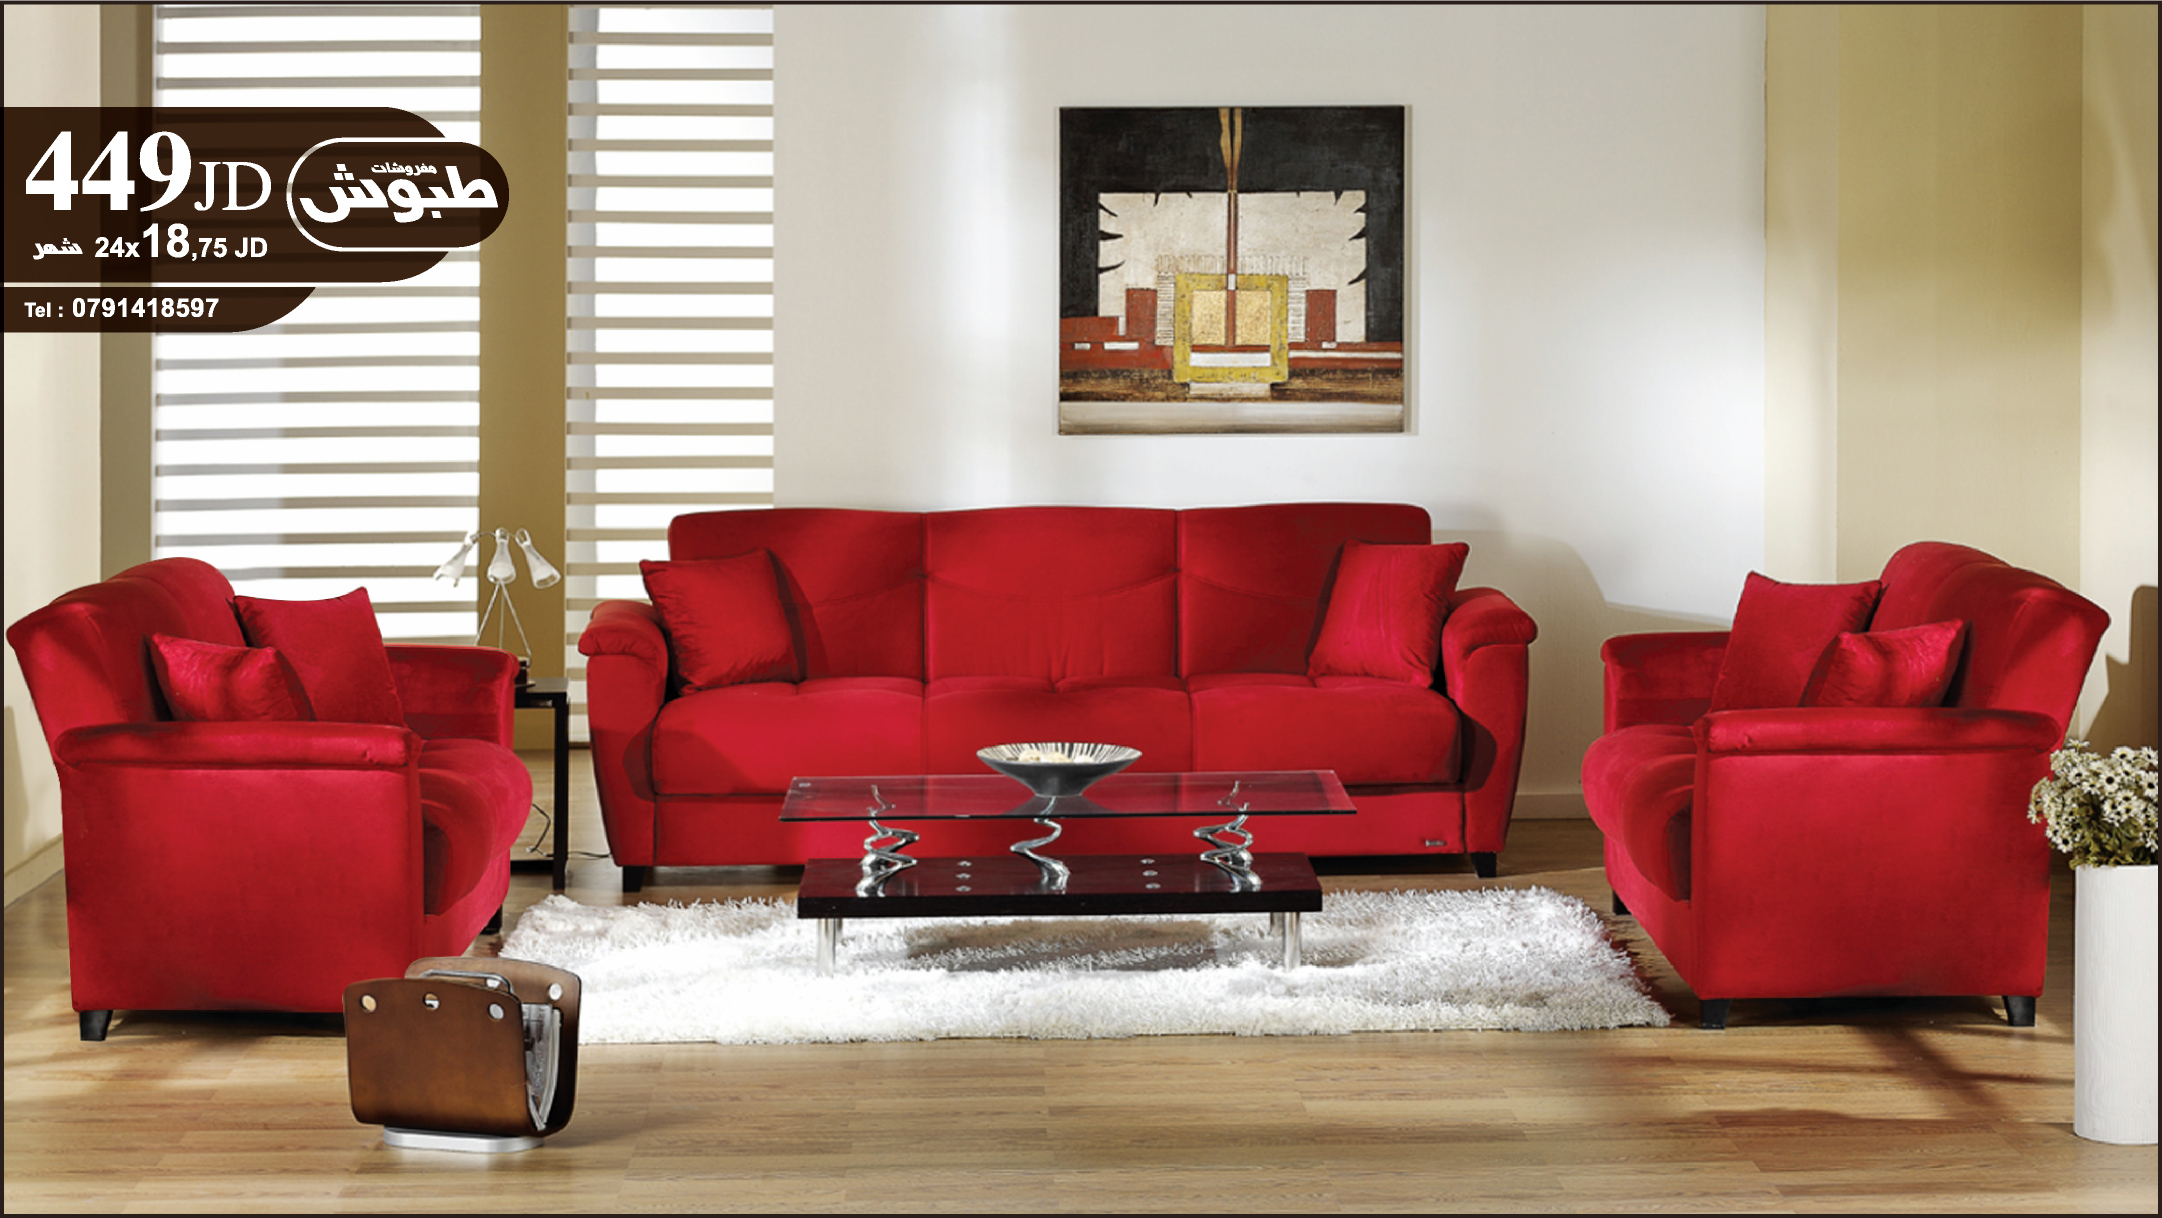 Современные диваны кресла. Красный диван. Гостиная с красным диваном. Красная мебель в интерьере. Диван в интерьере.